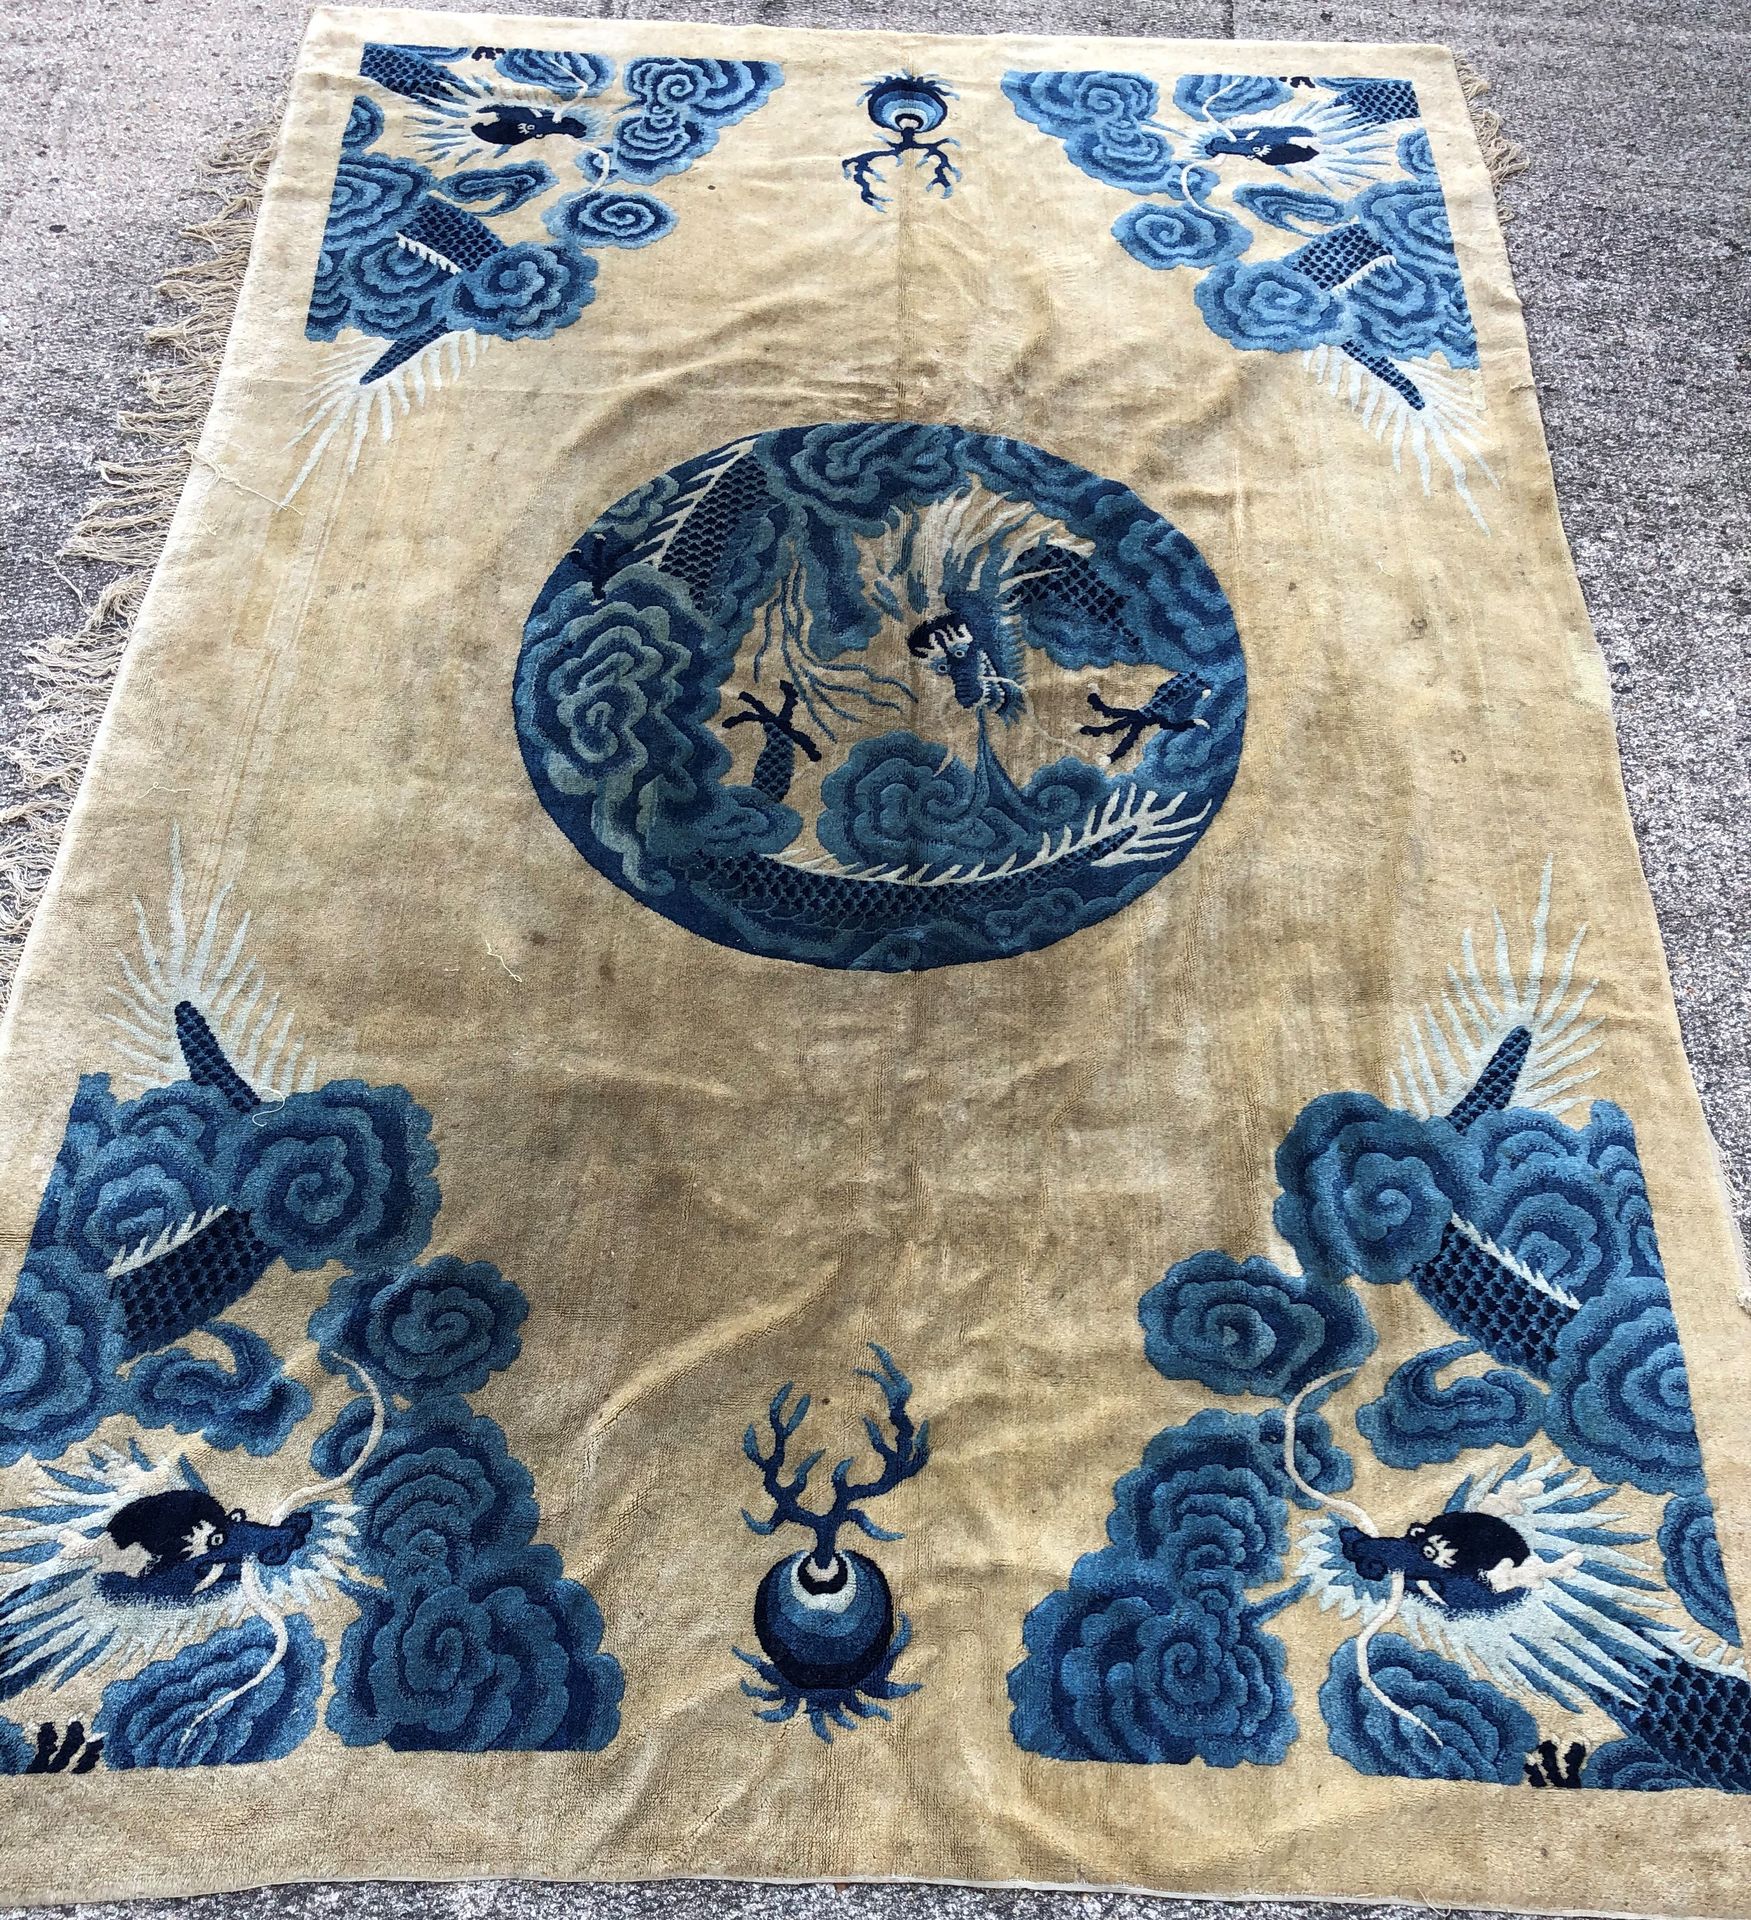 Null Conjunto de cuatro alfombras, dos de las cuales son chinas:

Diseño del dra&hellip;